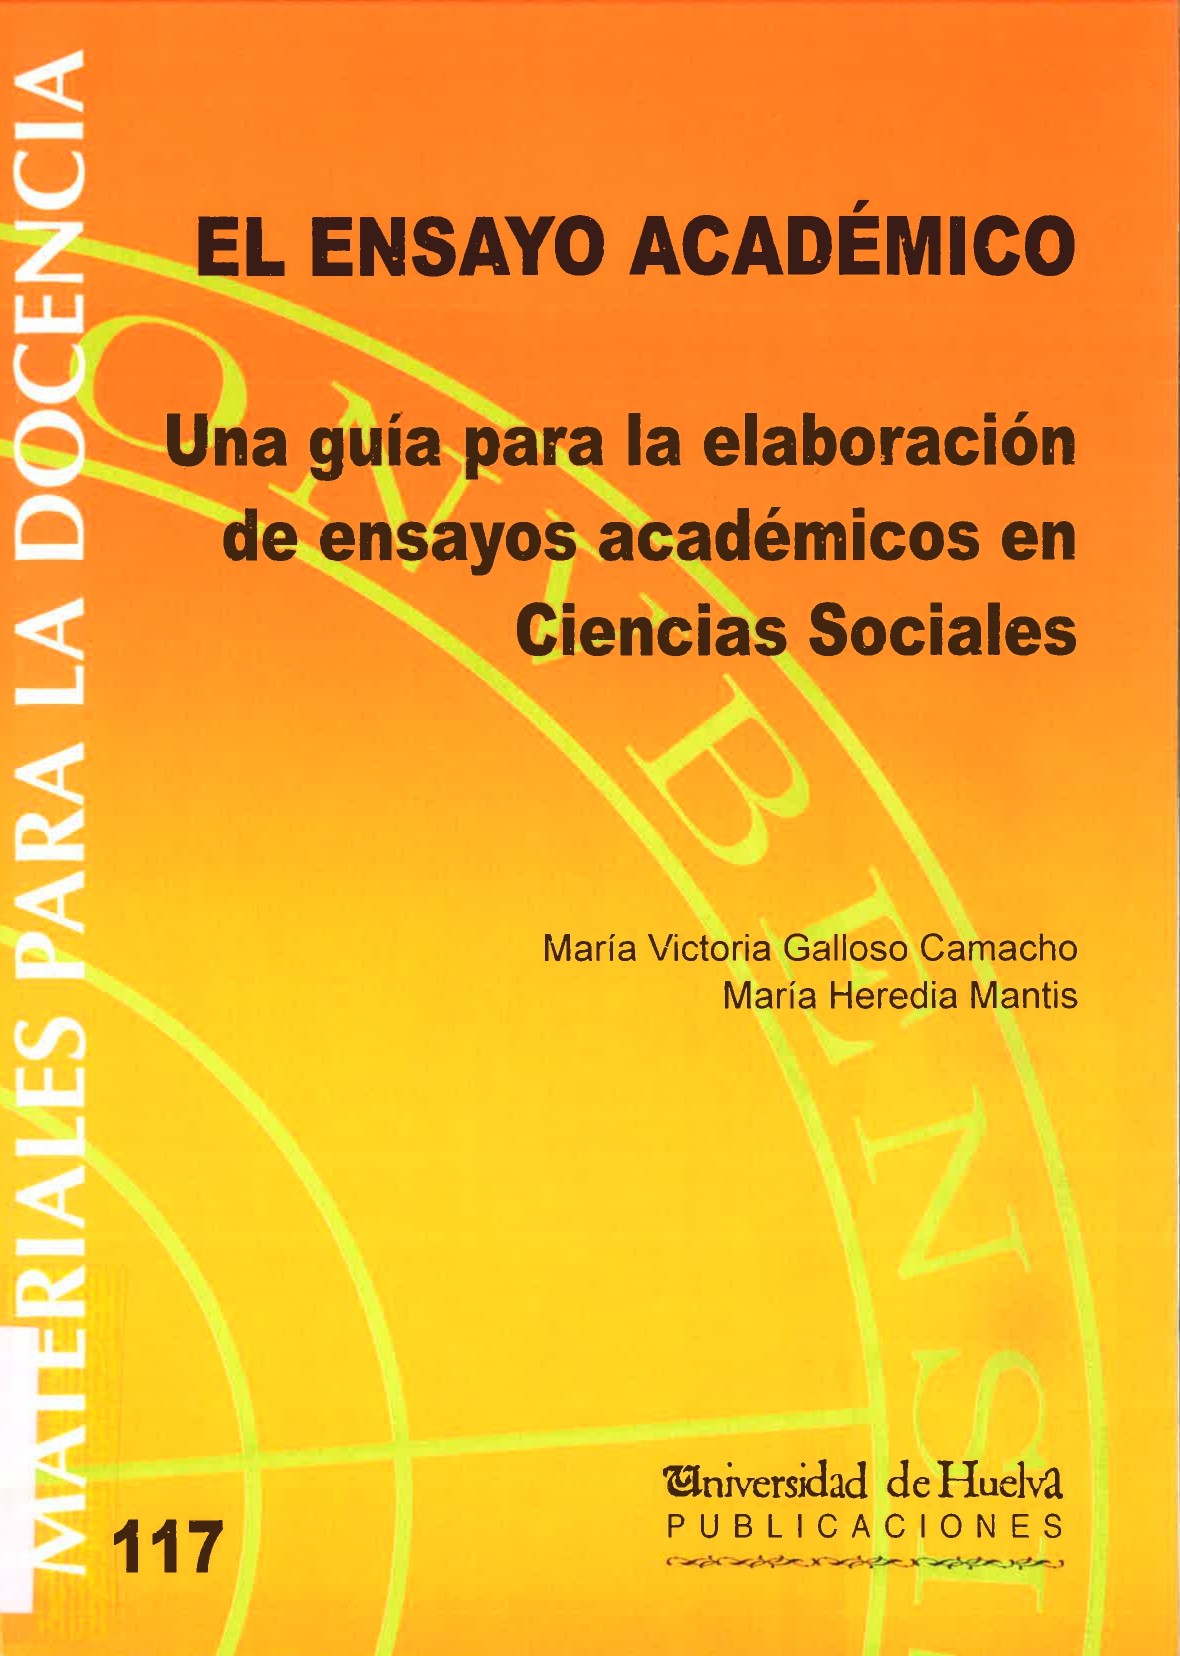 El ensayo académico: una guía para la elaboración de ensayos académicos en  Ciencias Sociales - Dialnet